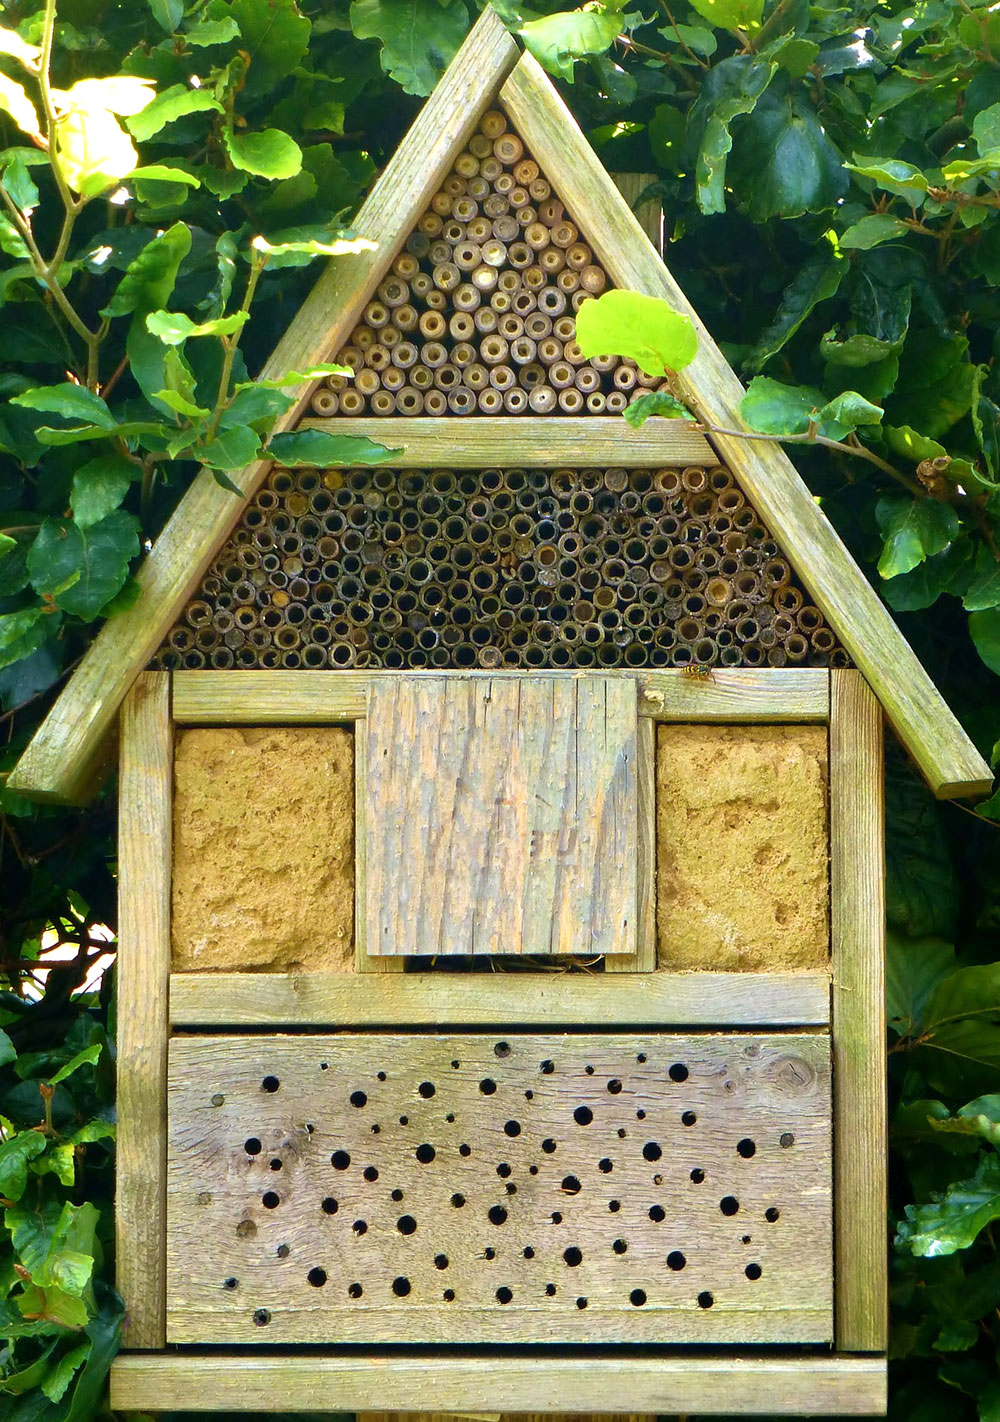 Installer hôtel à insectes - les 4 règles d'or - Hello Birdy le blog